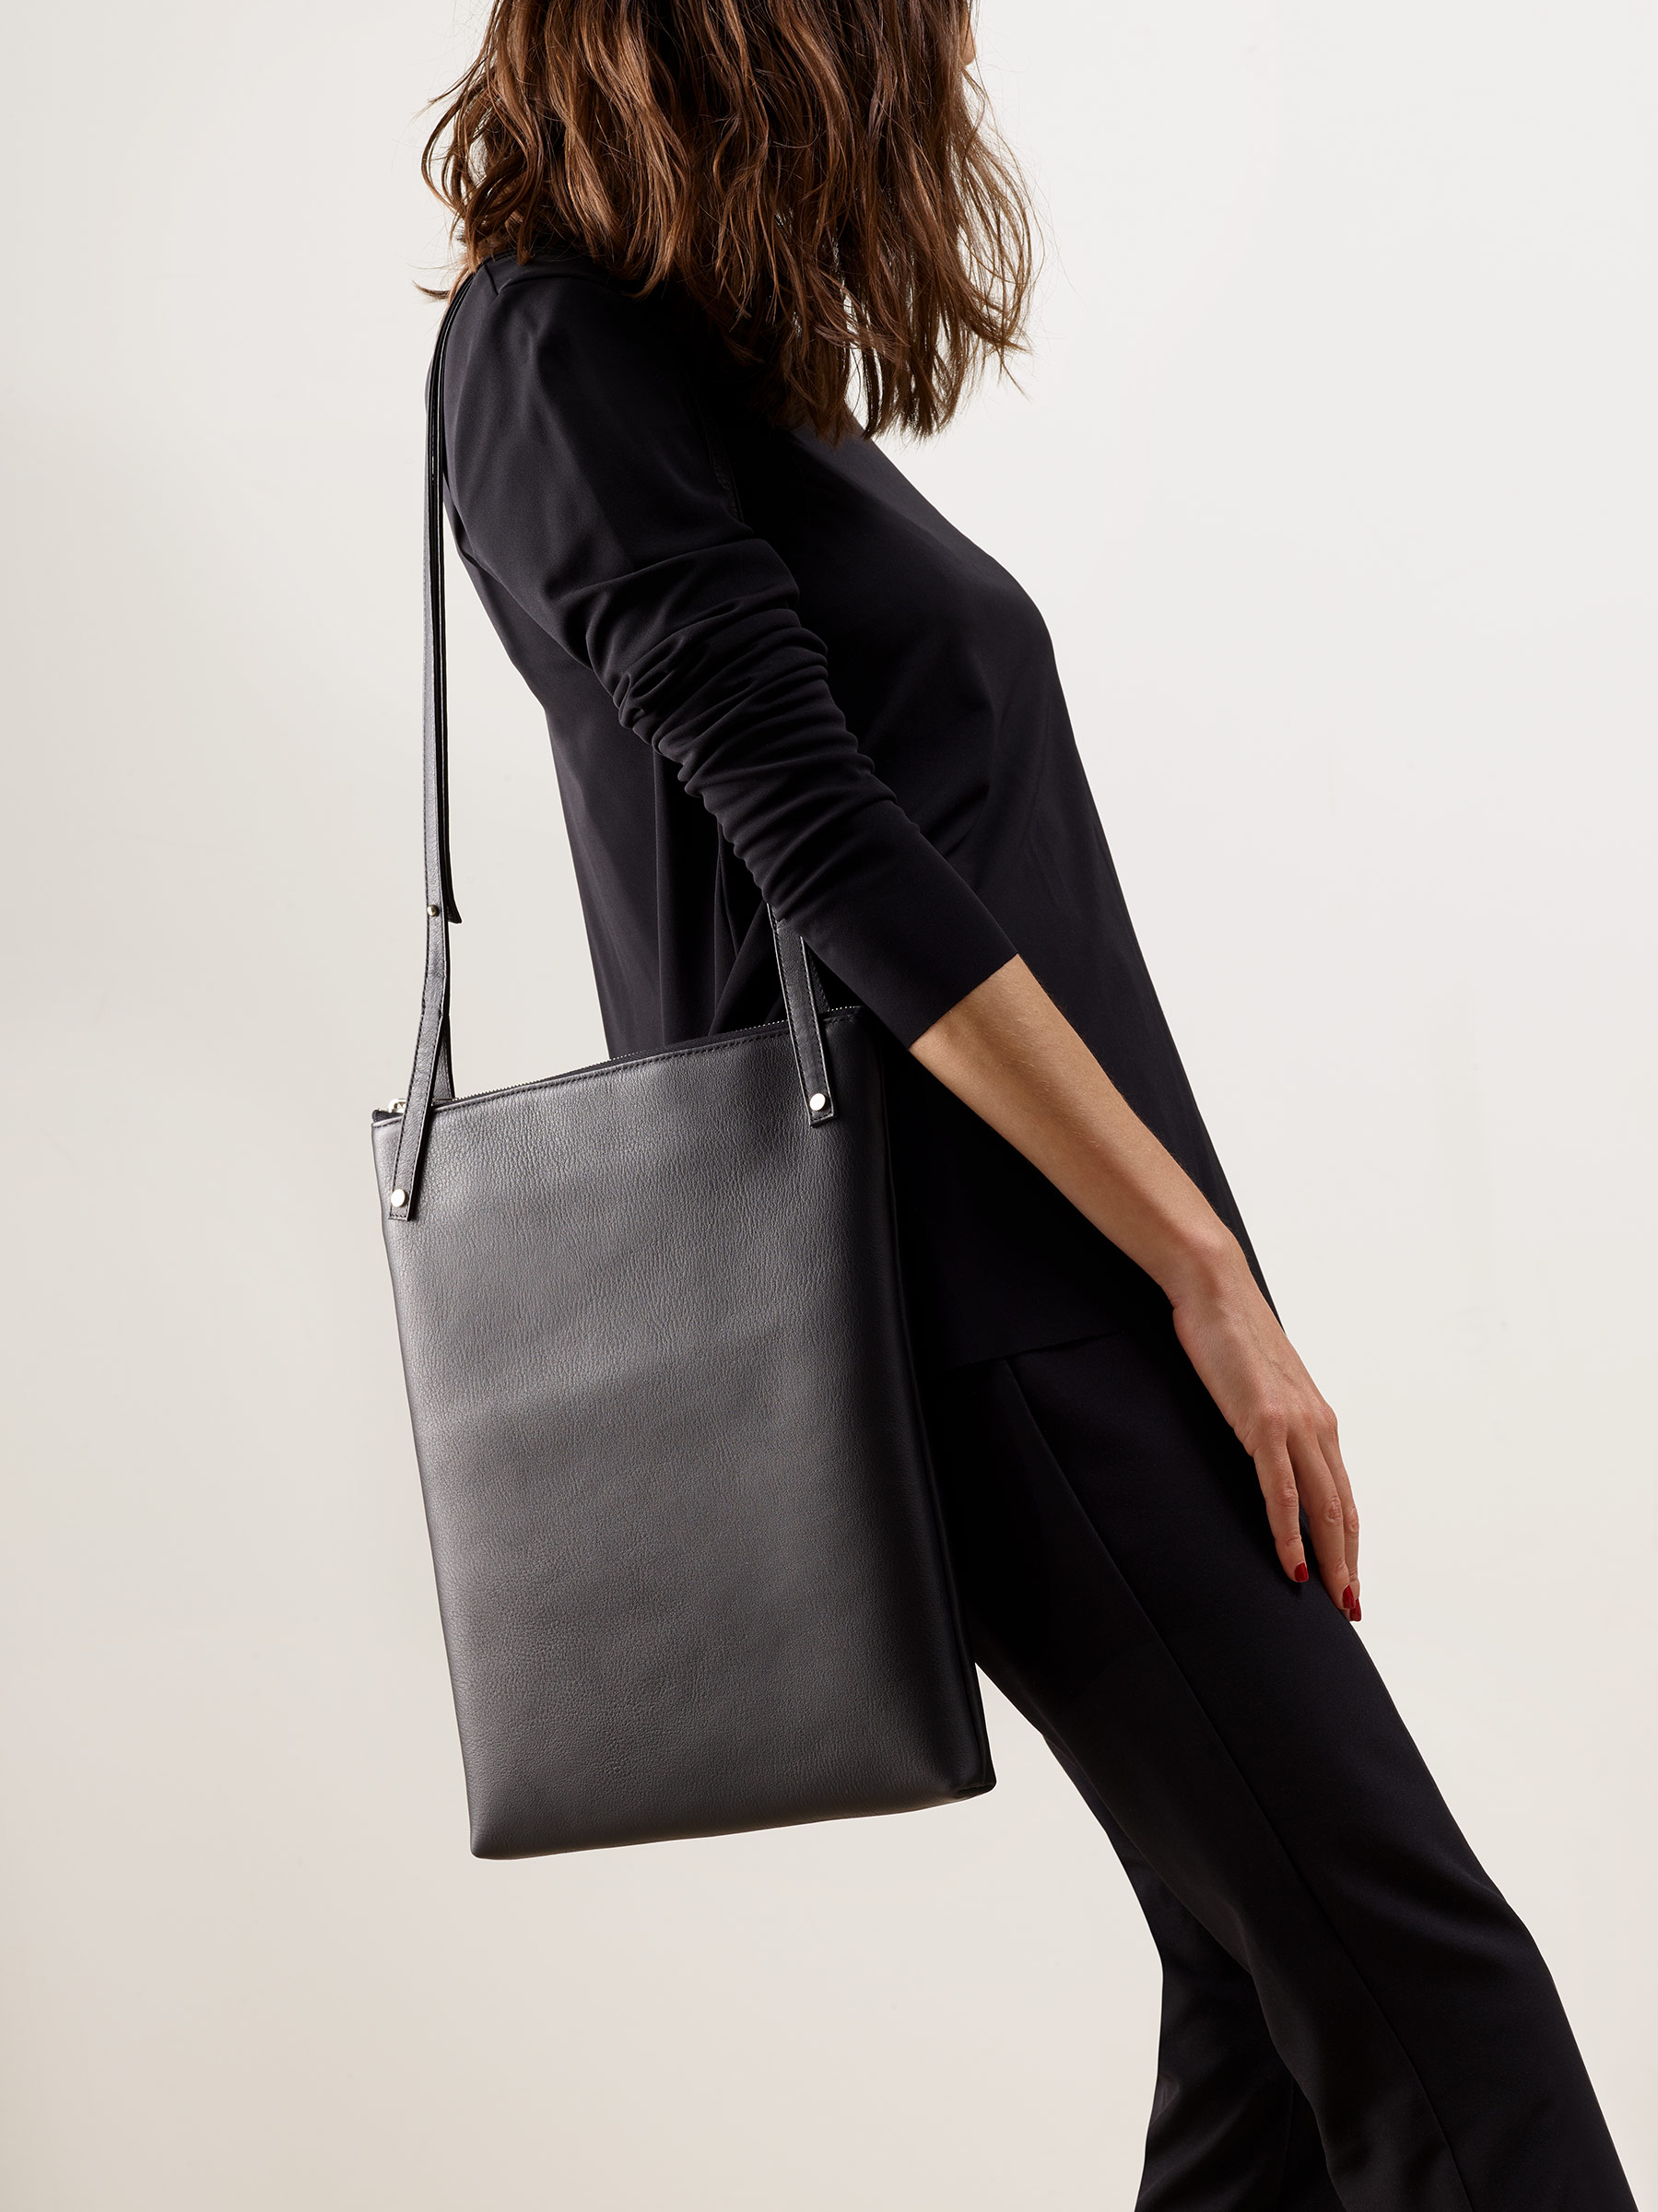 KRAMER 3 shoulder bag in black calfskin leather